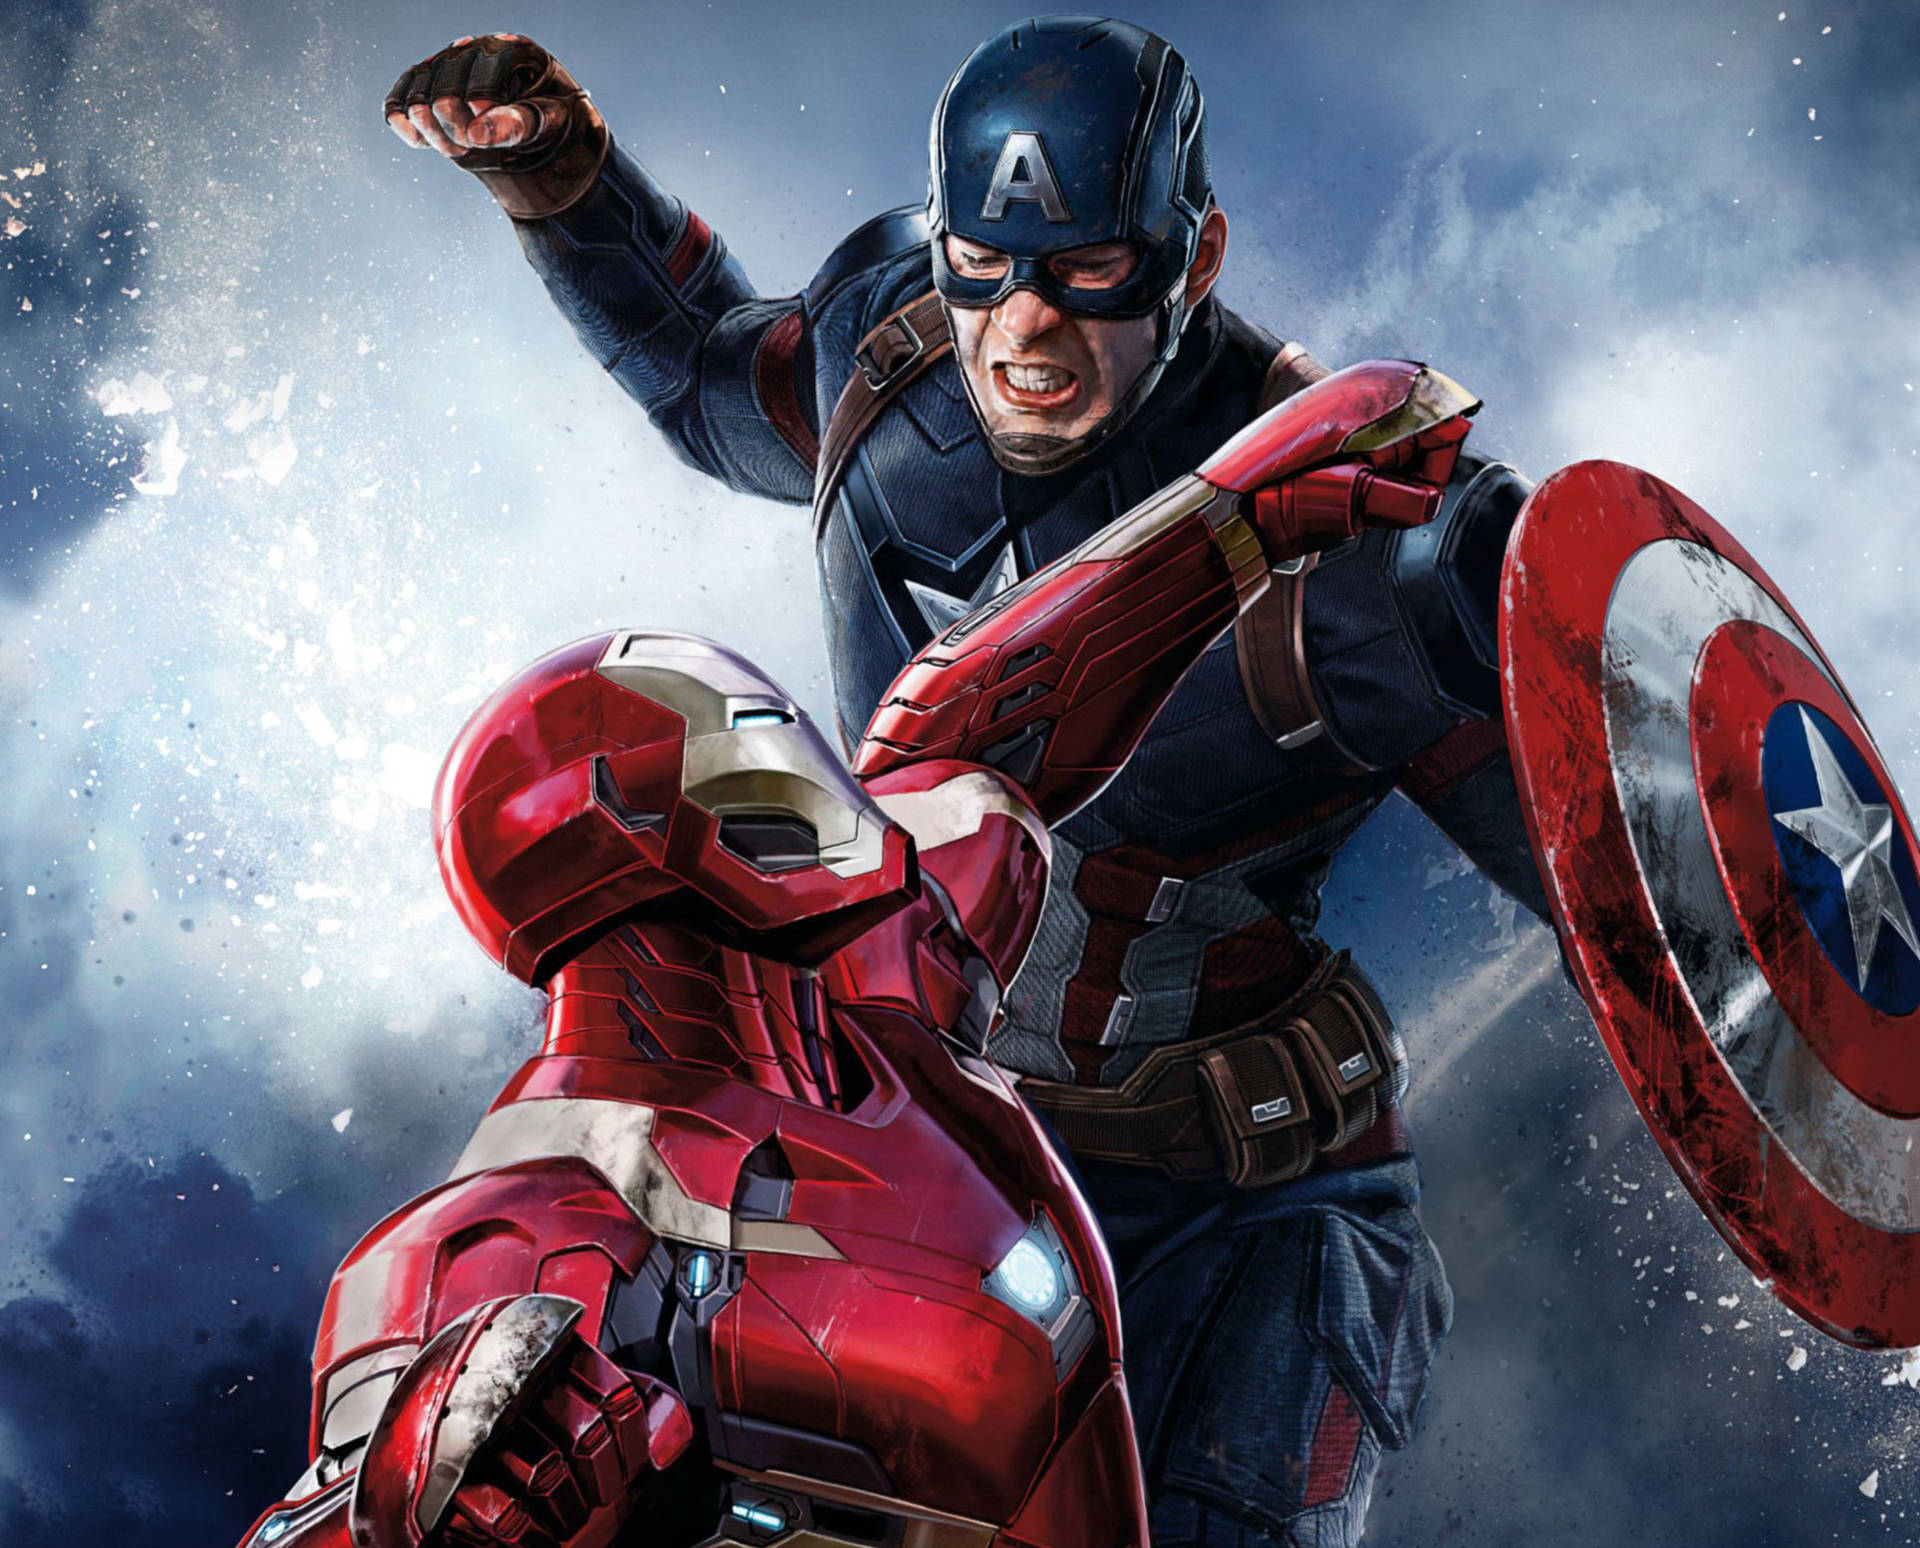 Iron Man Punching Captain America Civil War Wallpaper